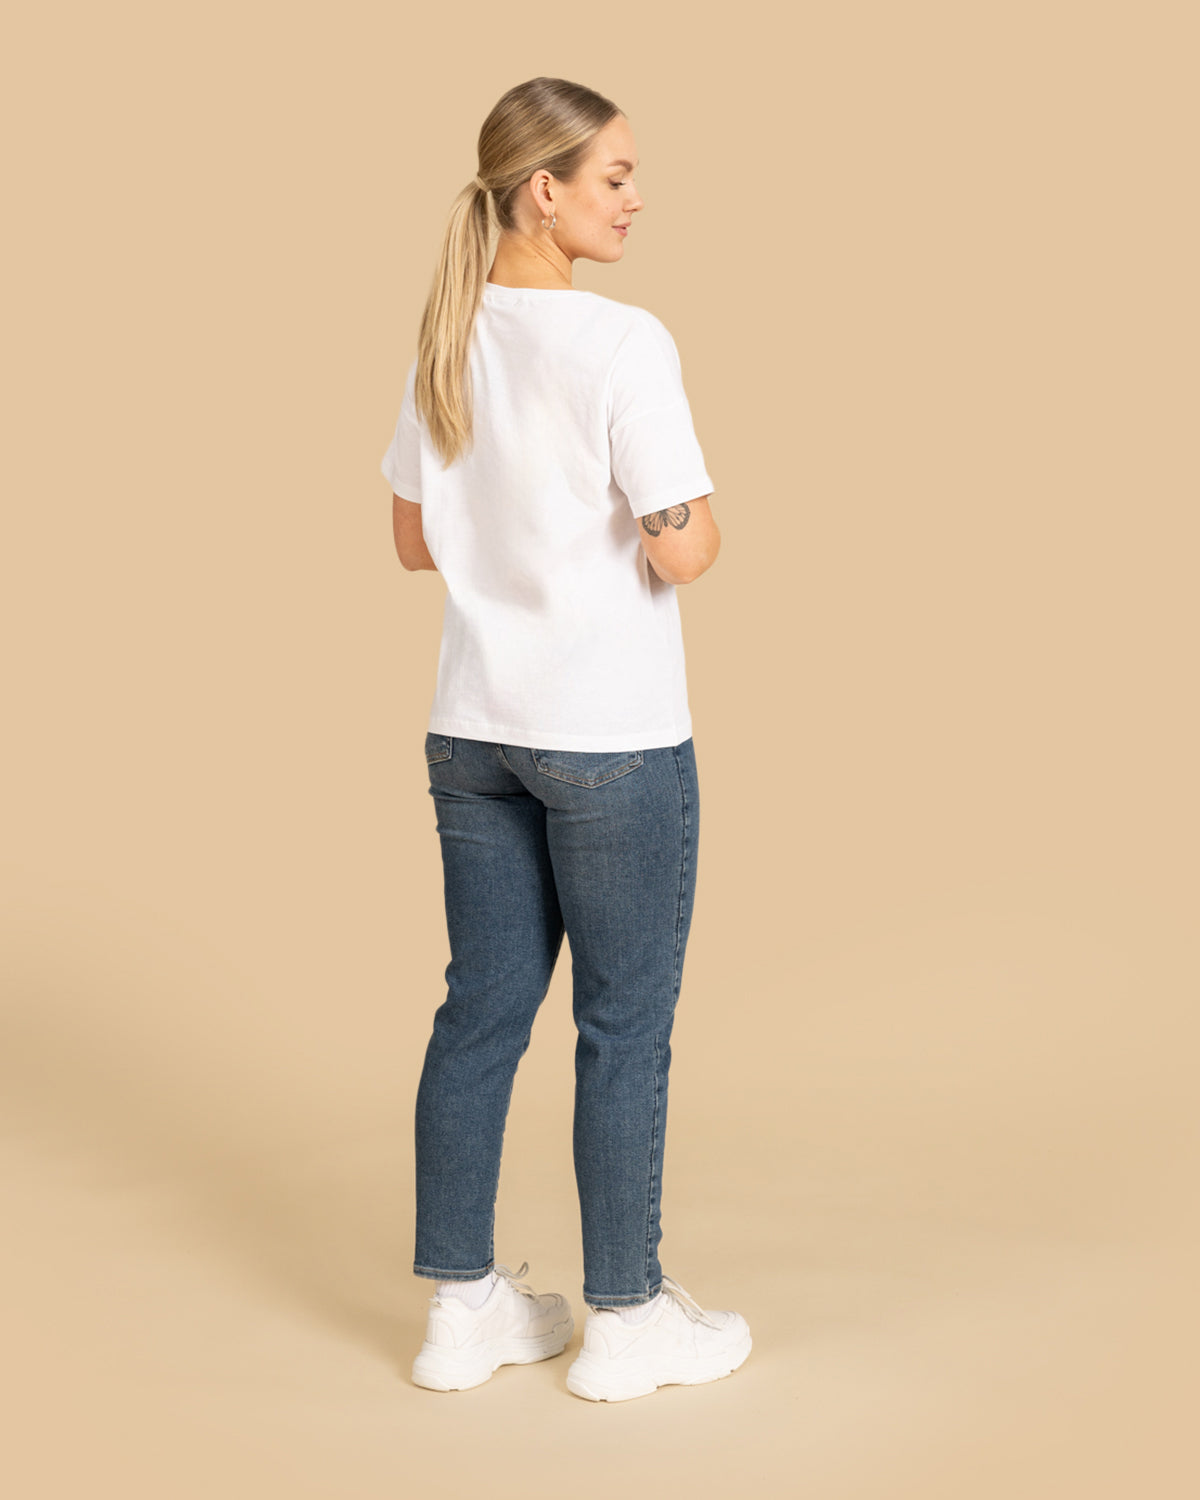 Valkoinen Toive t-paita RIVA Clothing.